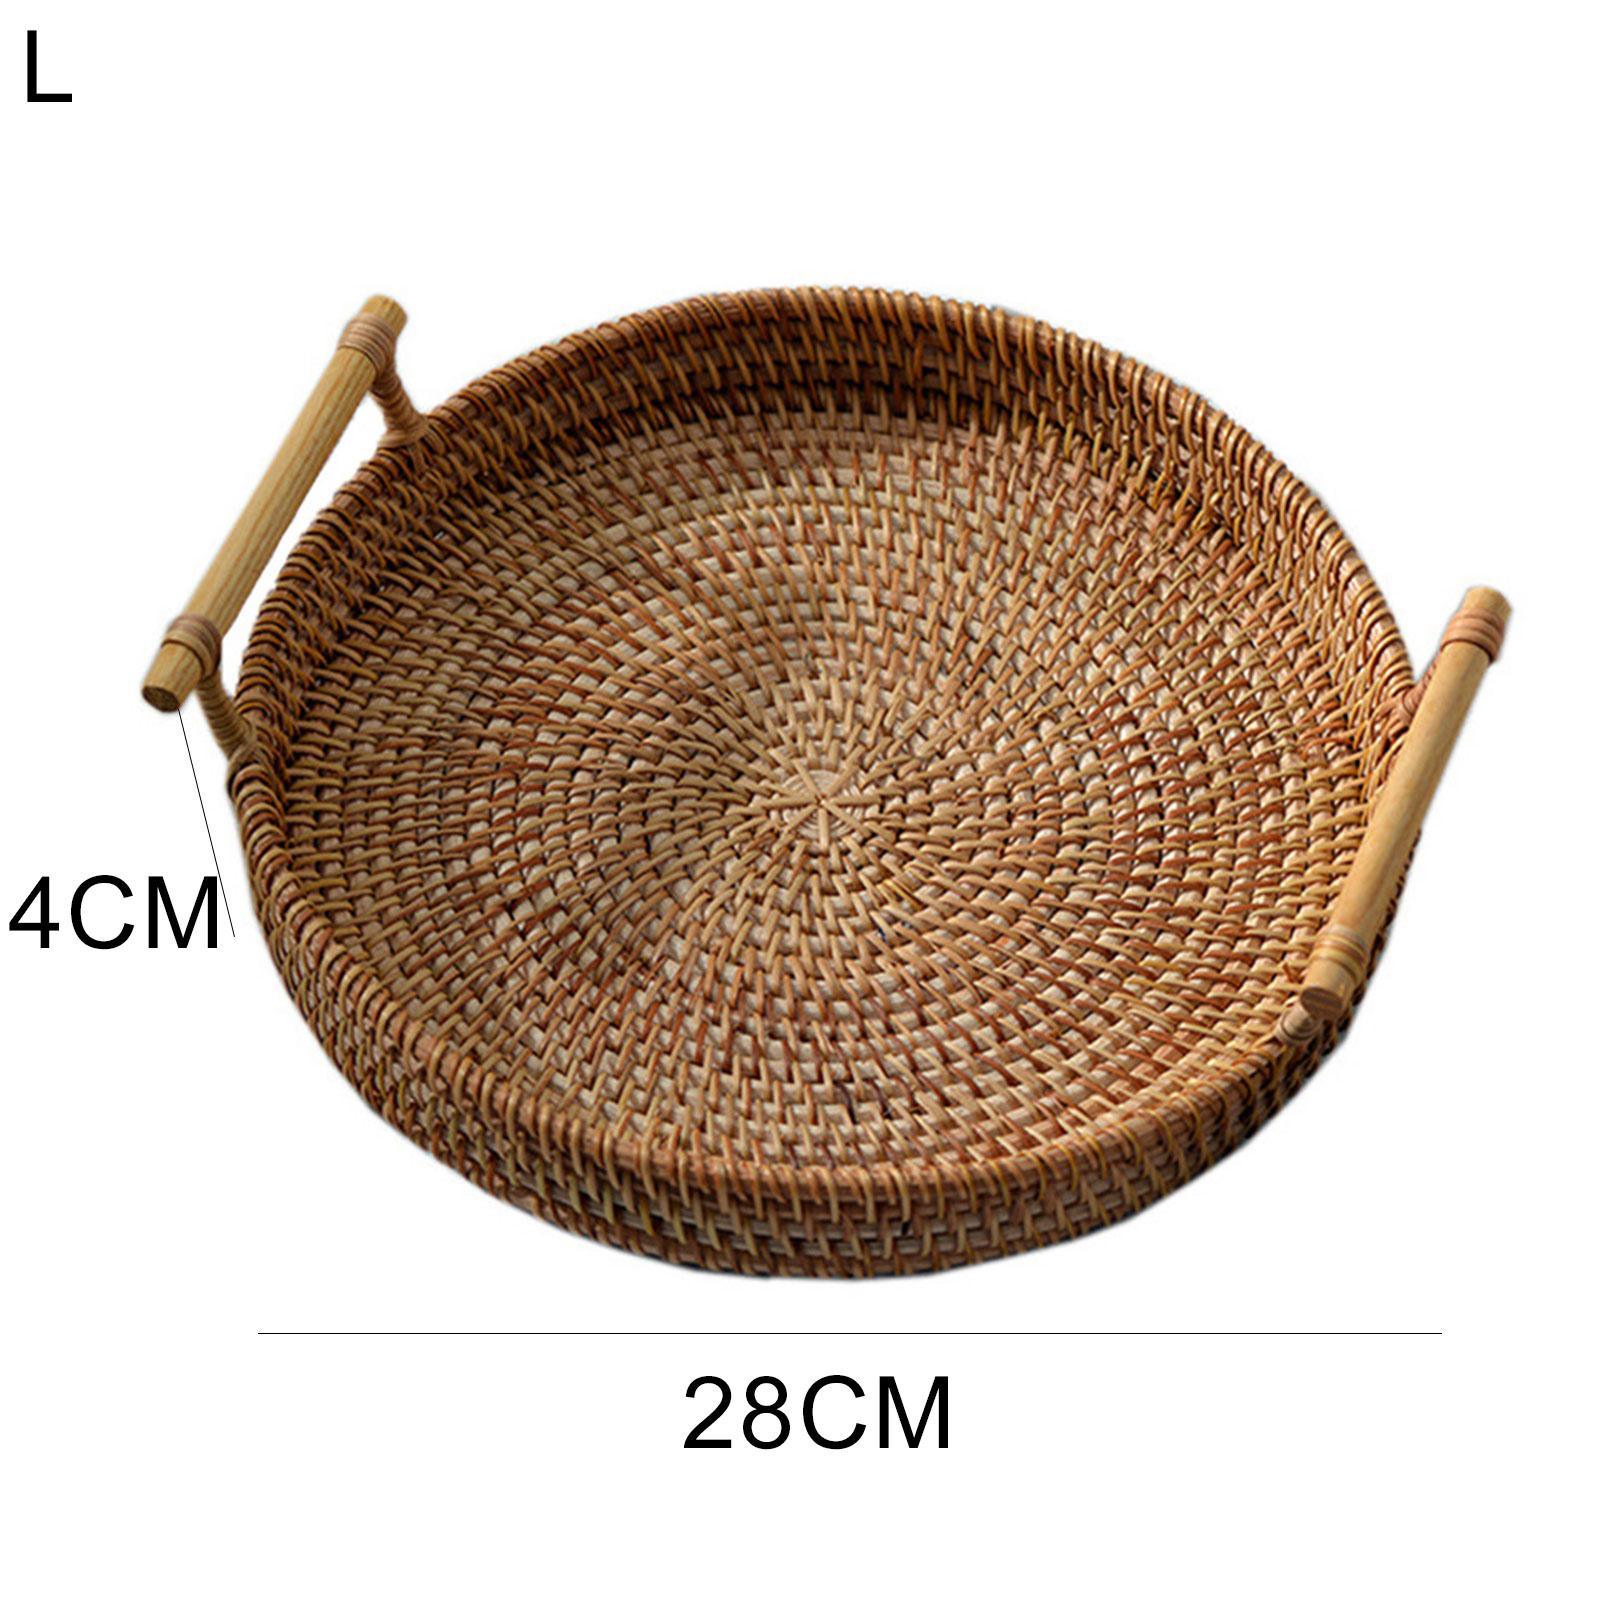 Handwoven Rattan Tray With Wooden Handles - Zen Zone Decor